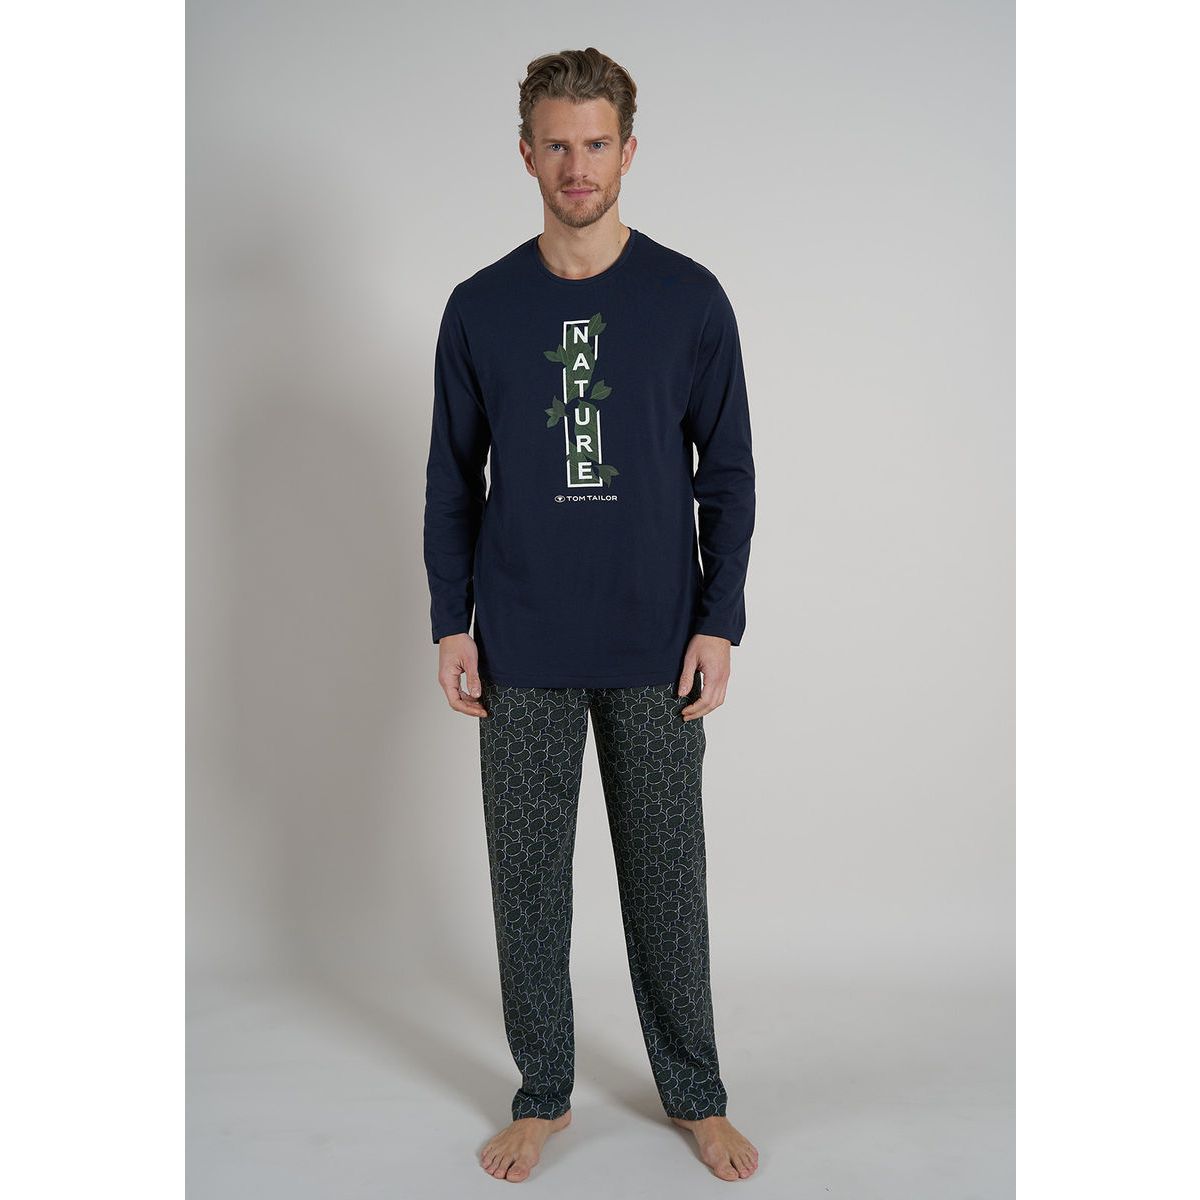 Groene Tom Tailor pyjama Nature | Gratis verzending vanaf € 40,- | Gratis  retour | Snel in huis | Online de mooiste pyjama's, nachthemden, ondermode  en meer